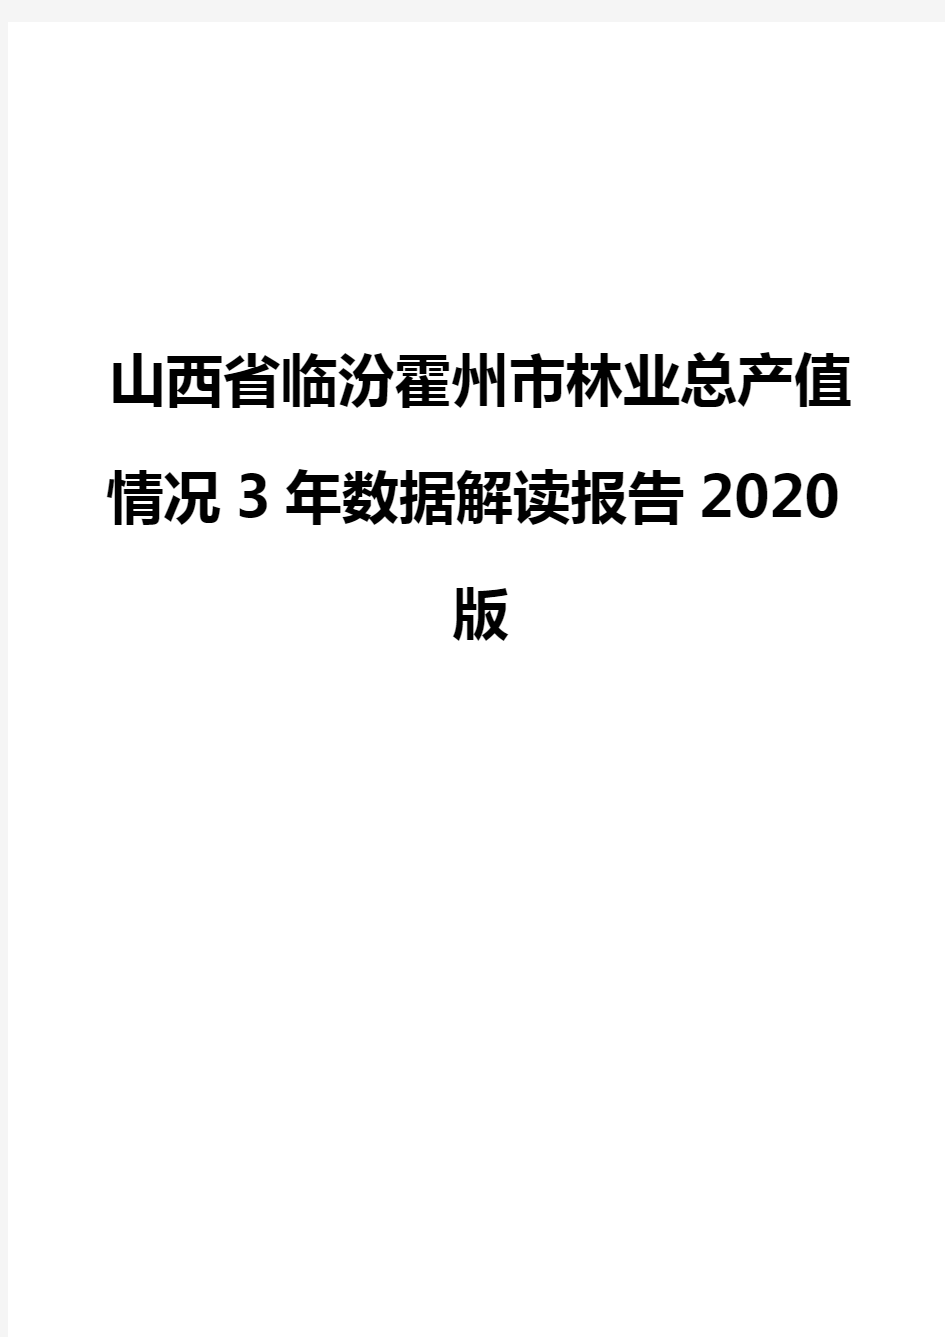 山西省临汾霍州市林业总产值情况3年数据解读报告2020版